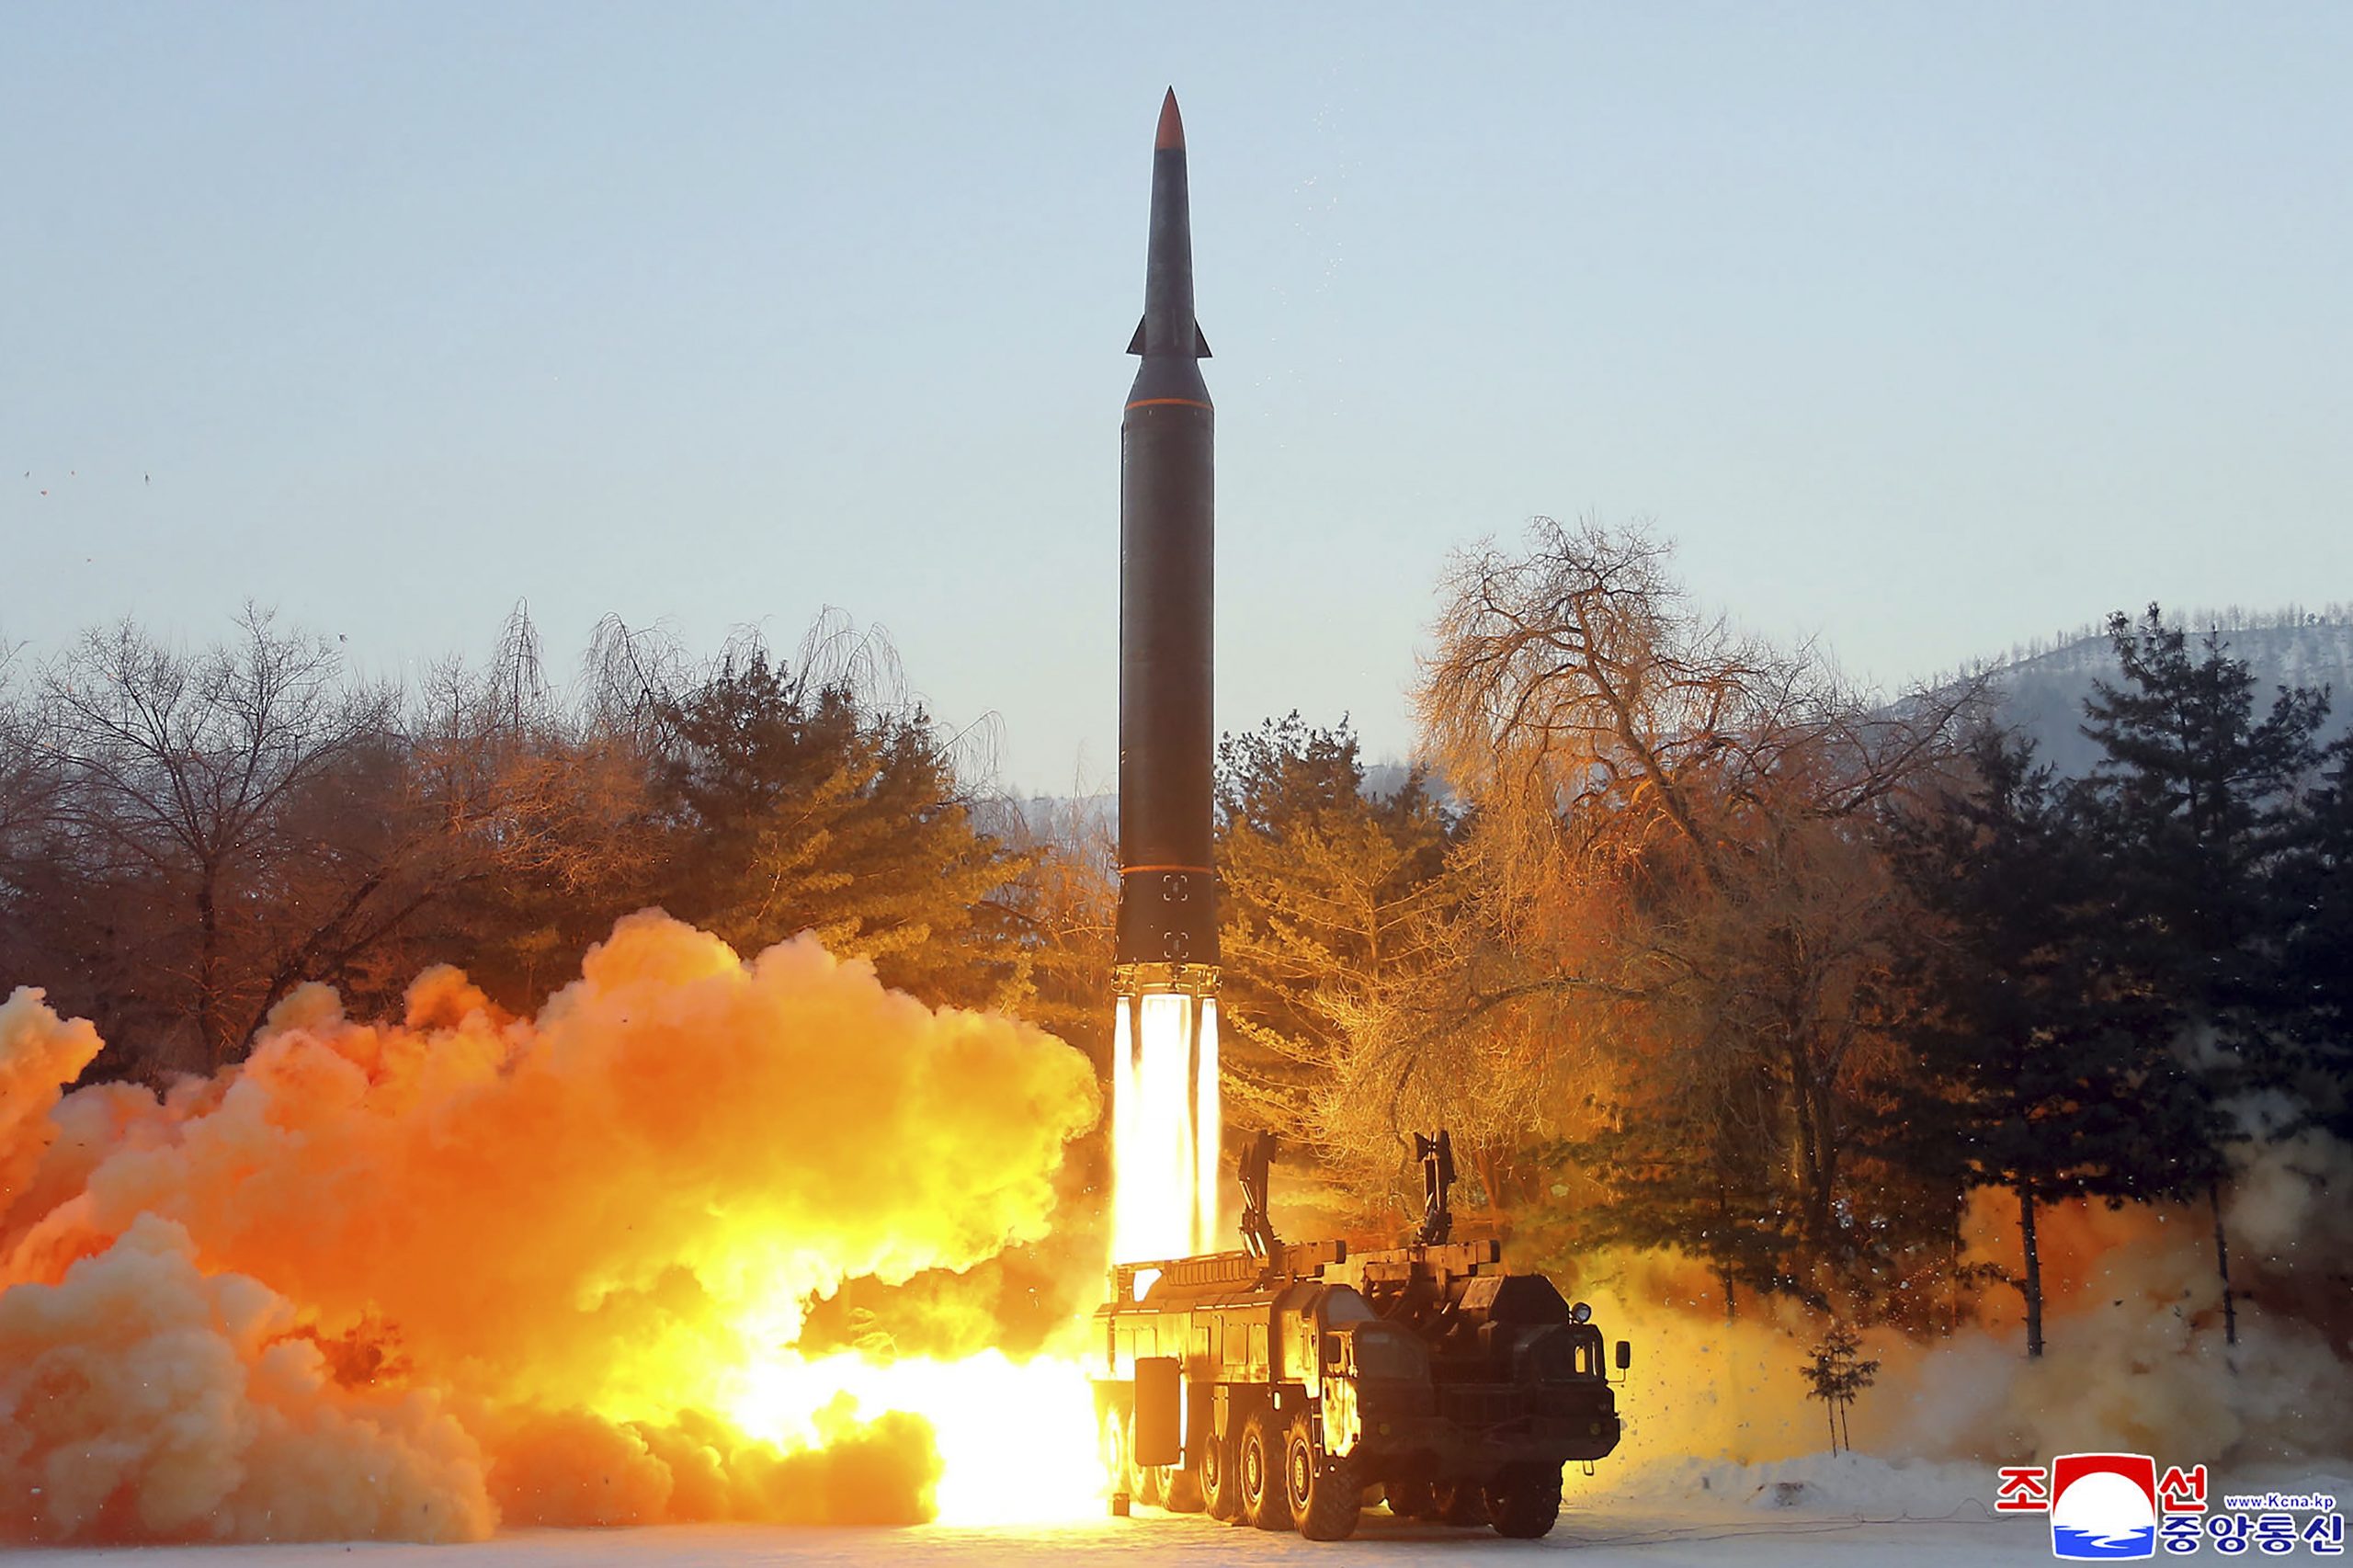 朝鲜再发射弹道导弹  今年来第18次武力示威